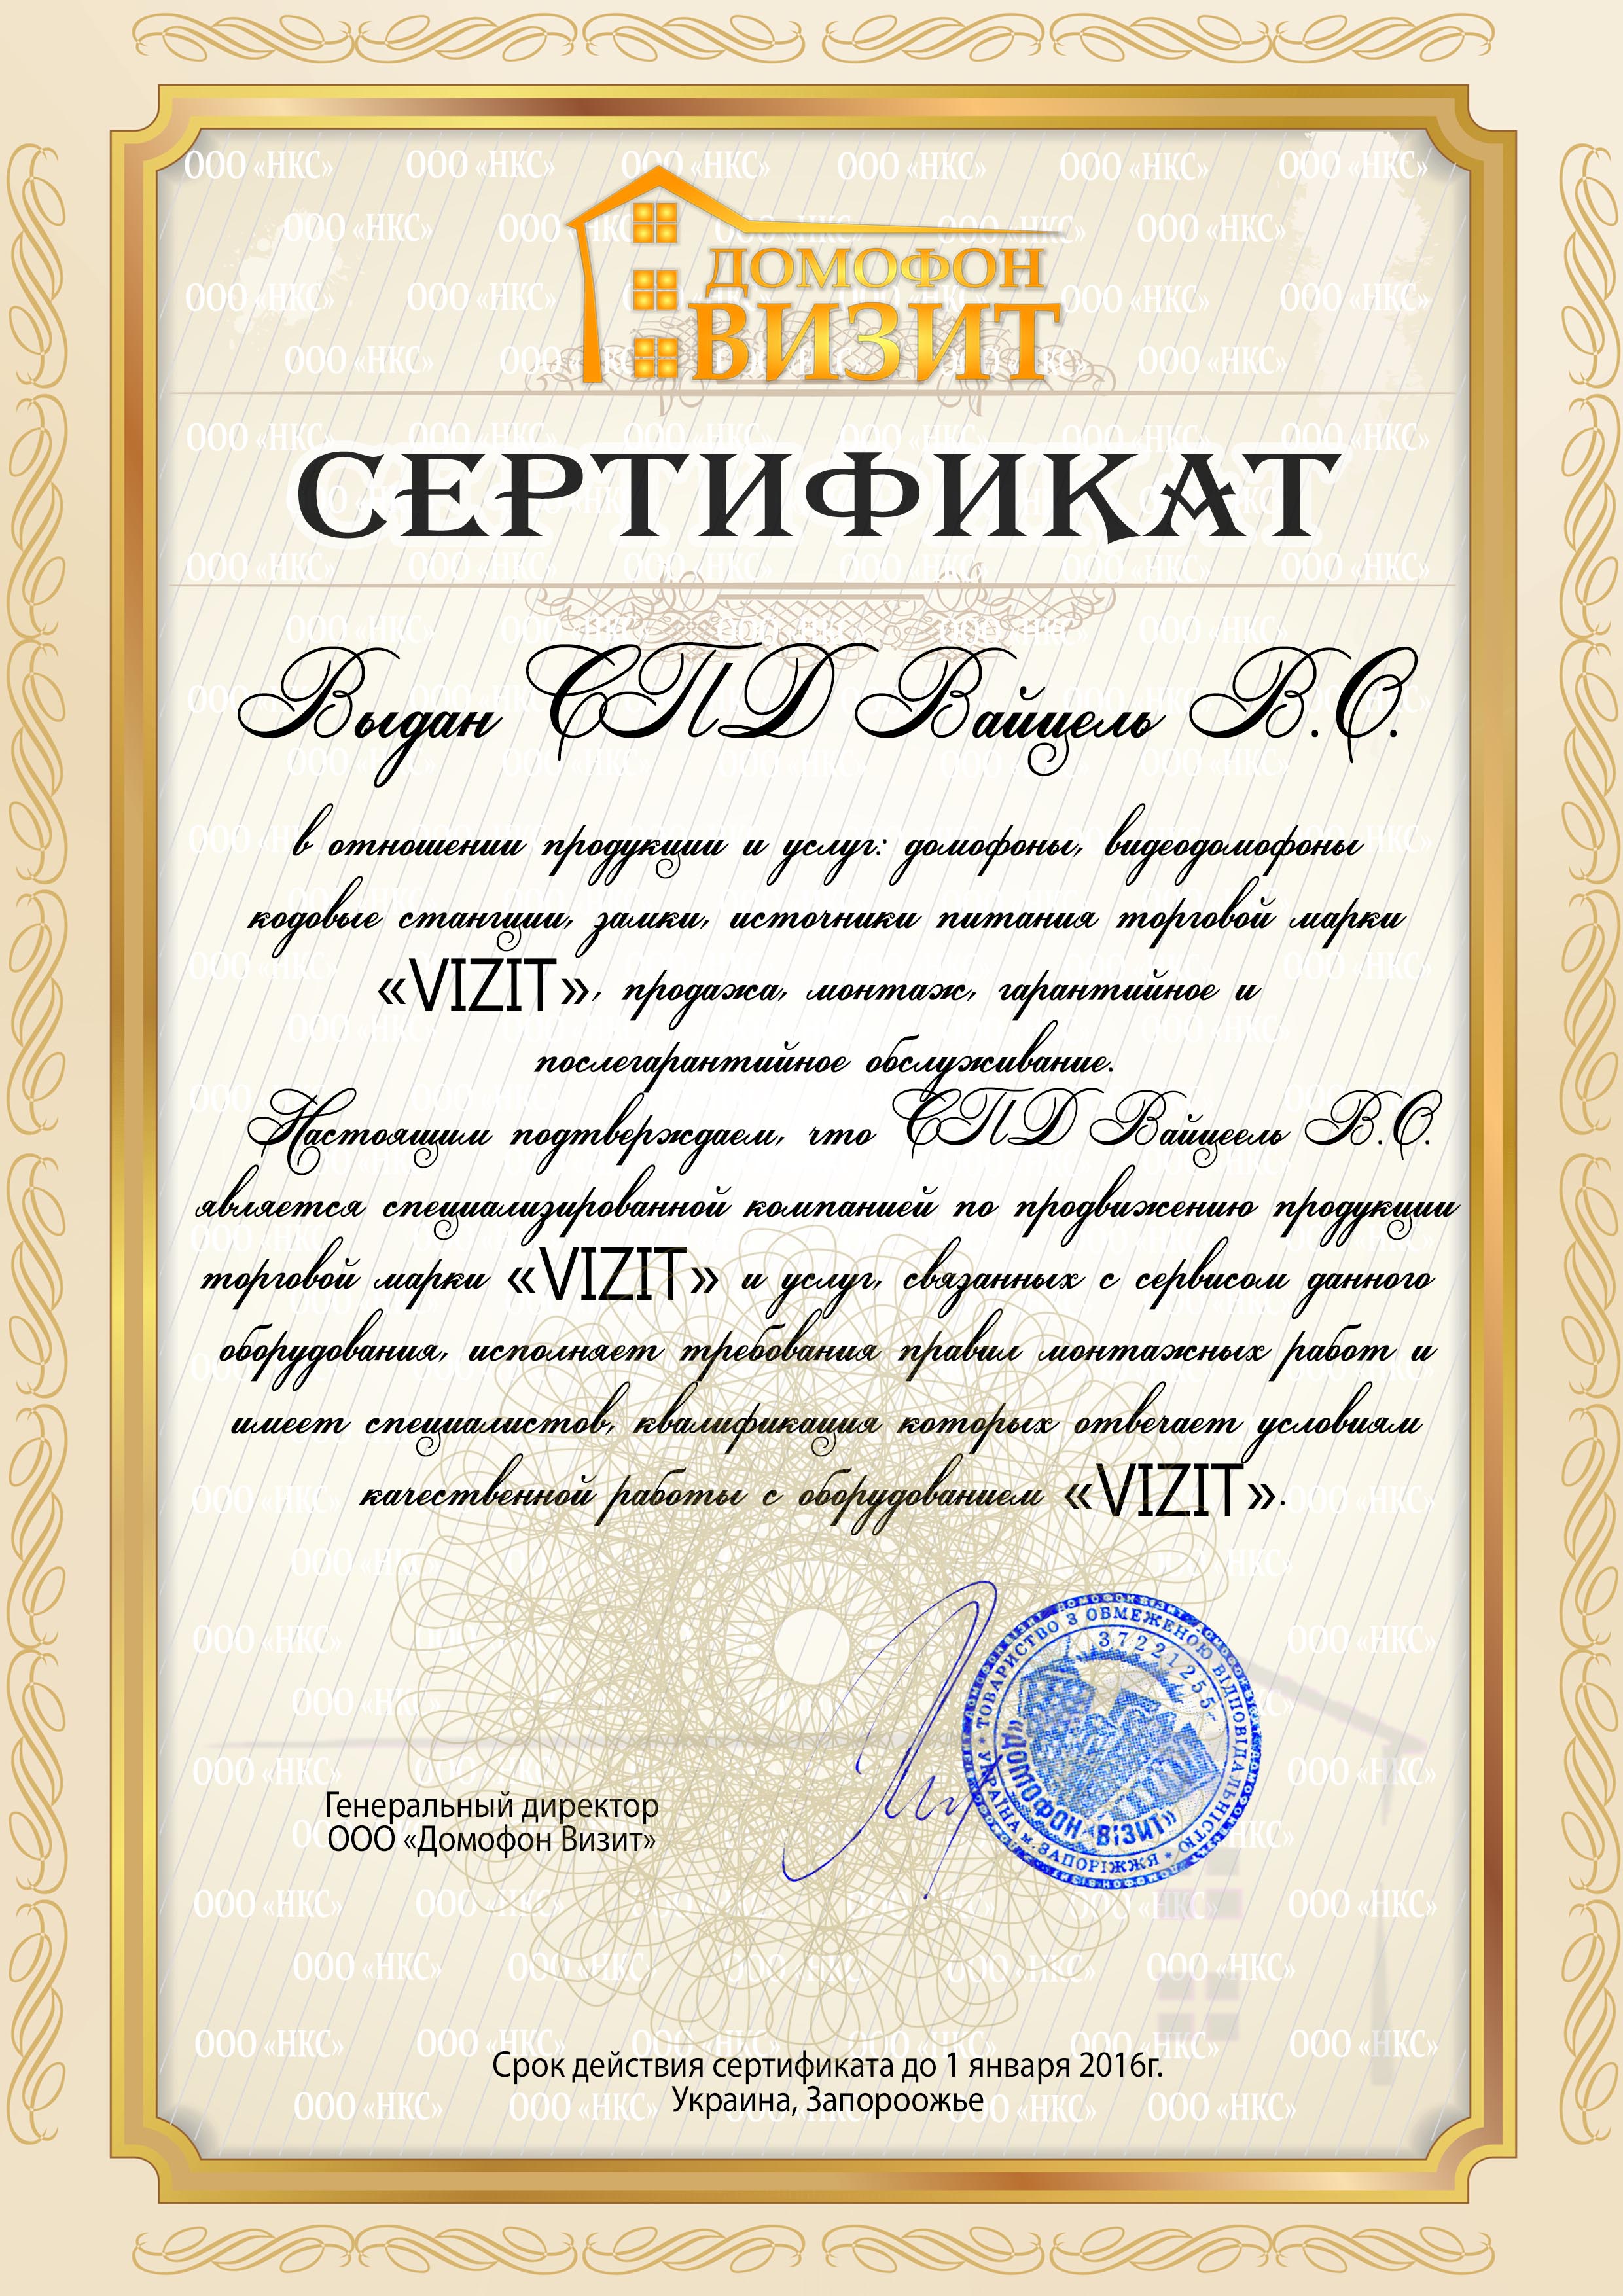 Сертификат на 2014